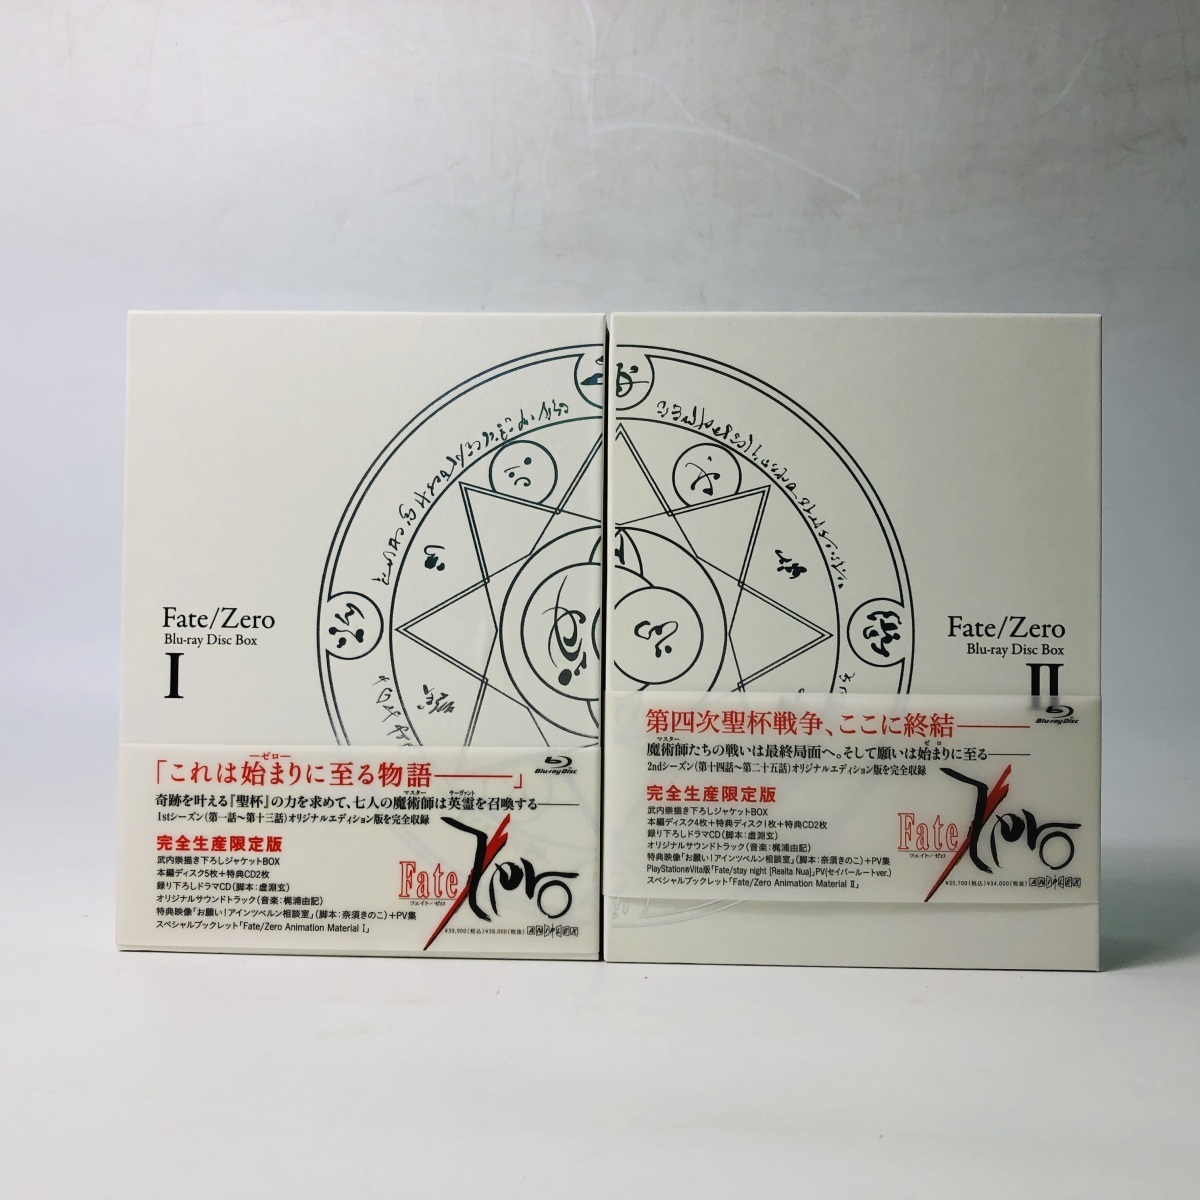 品 Fate/Zero Blu-ray Disc BOX I II 完全生産限定版 全2巻収納BOX